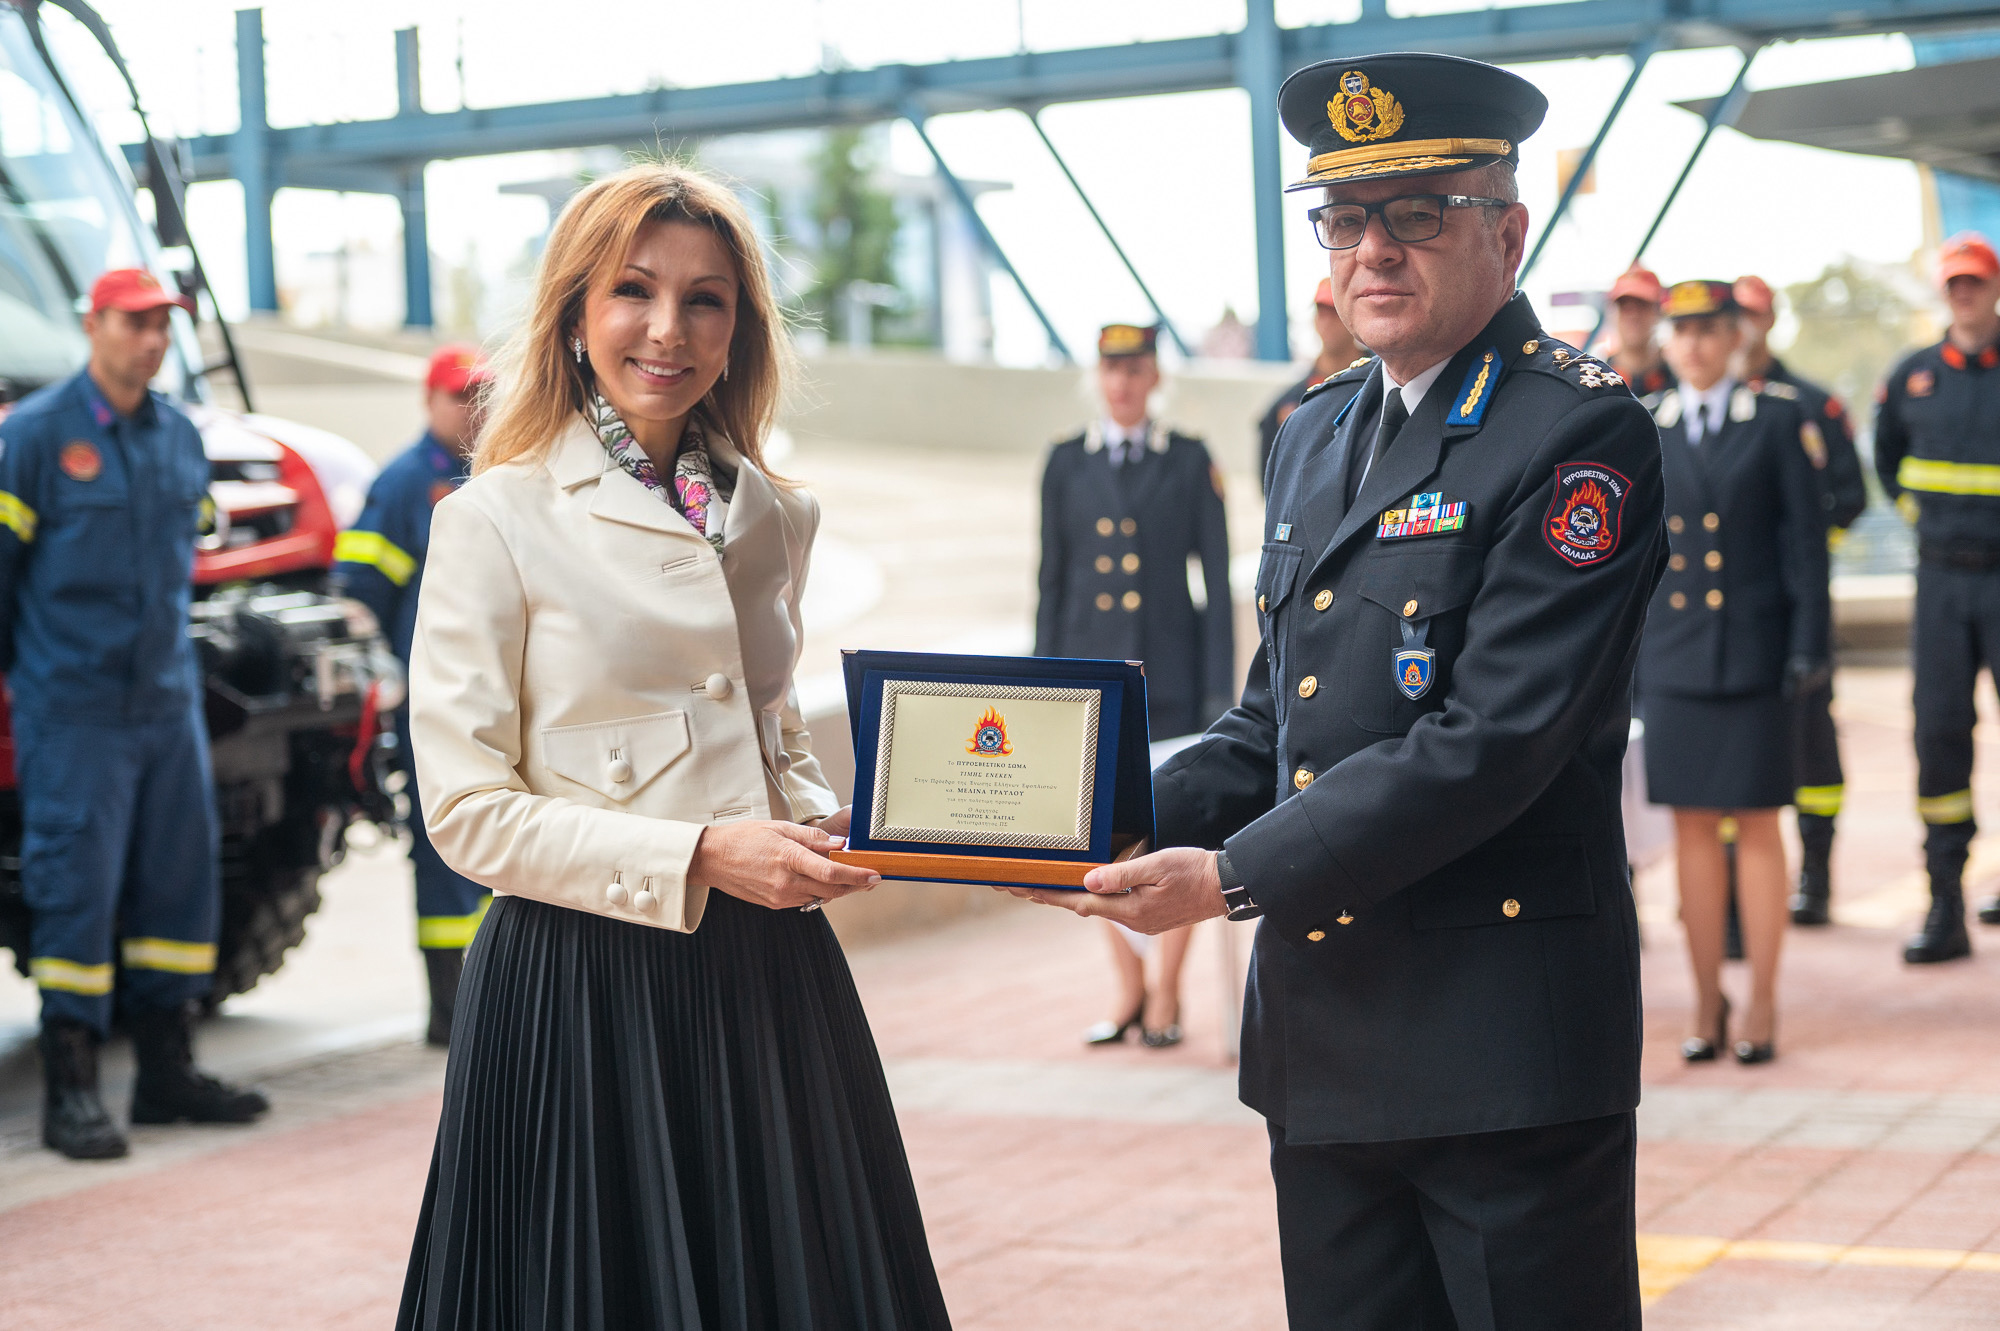 Η πρόεδρος της Ένωσης Ελλήνων Εφοπλιστών Μελίνα Τραυλού παραλαμβάνει τιμητική πλακέτα από τον Αρχηγό του Πυροσβεστικού Σώματος, Θεόδωρο Βάγια